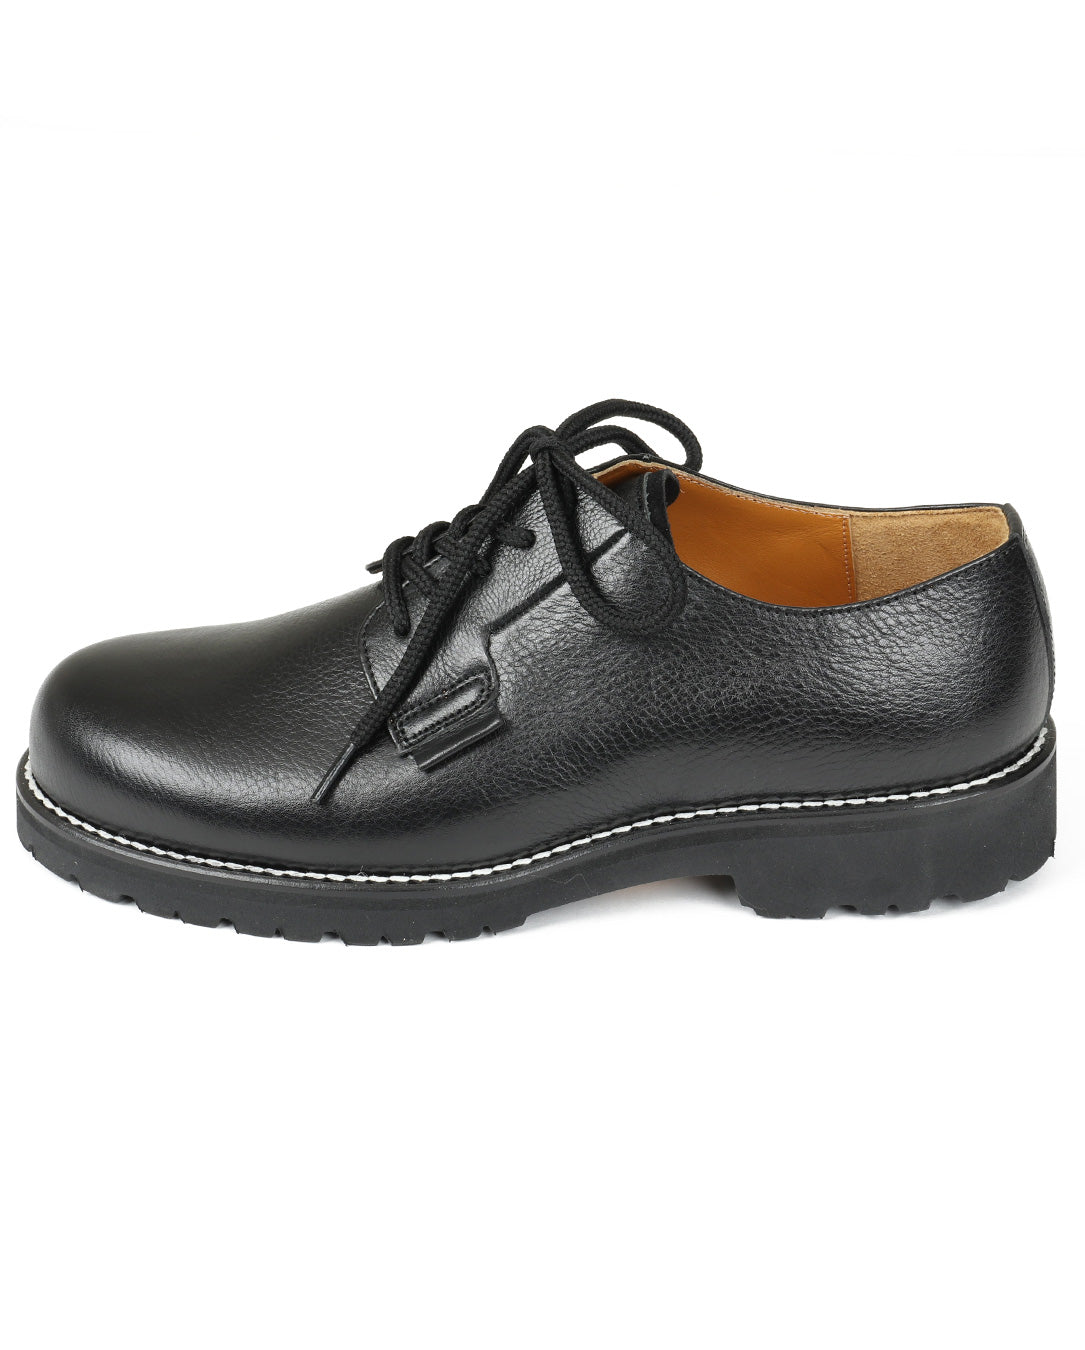 Asymmetric Postman Shoes black